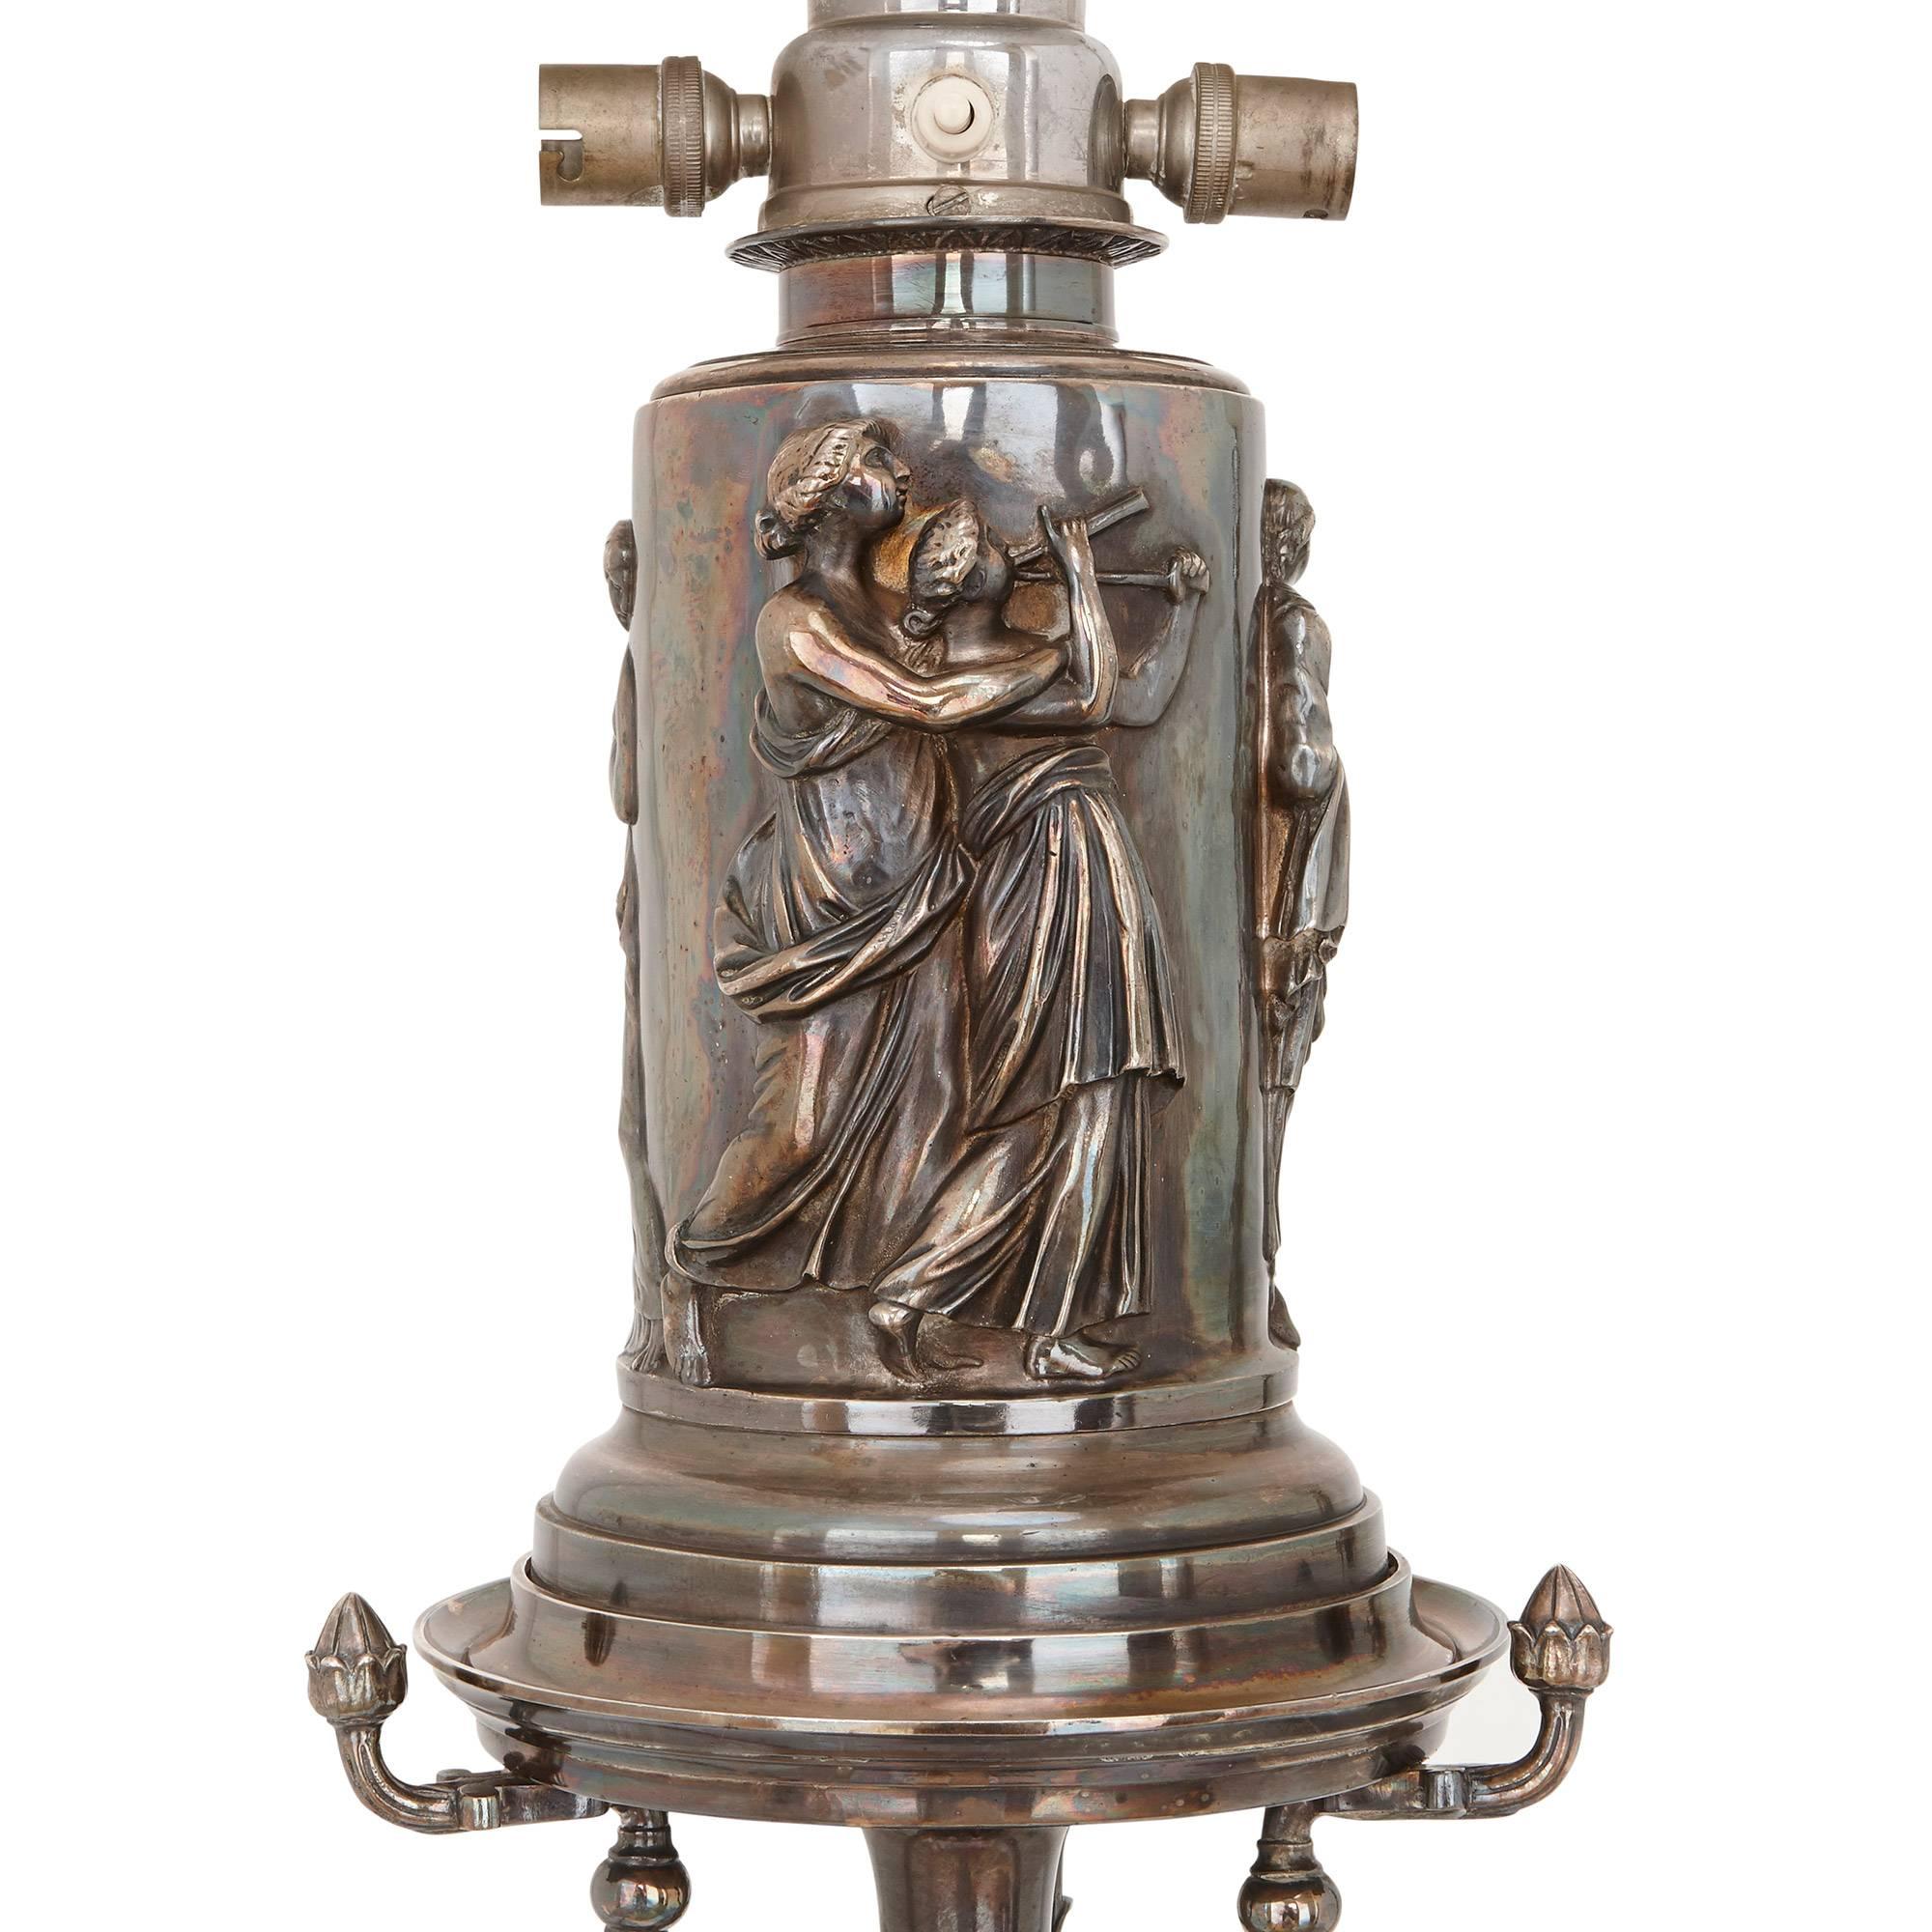 Ces magnifiques lampadaires français anciens sont coulés dans un délicat bronze argenté, et sont décorés dans un style néoclassique raffiné. La paire ferait un ajout étonnant à tout intérieur de luxe, chaque ensemble avec tige feuillagée moulée avec